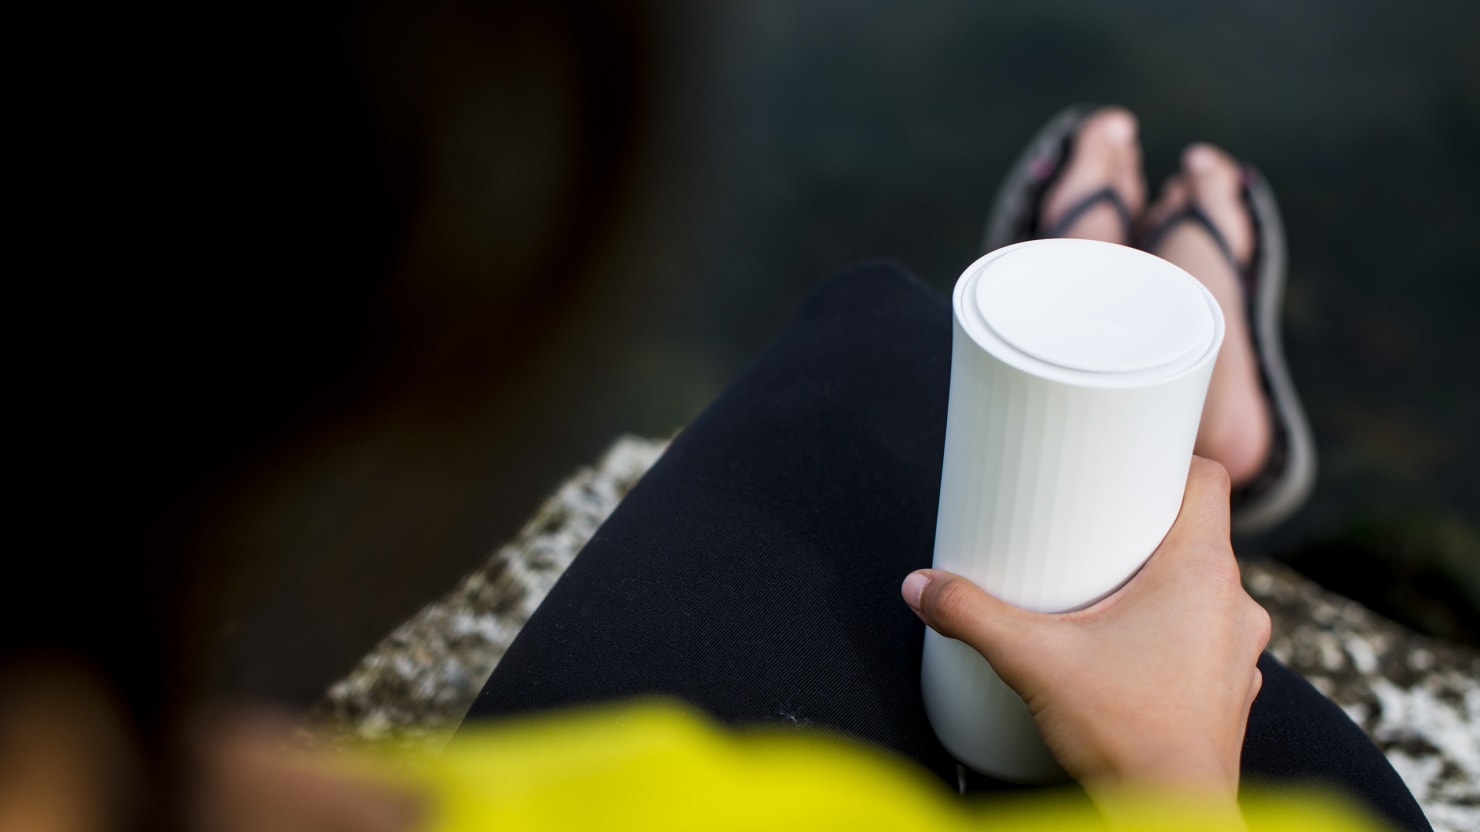 Vessyl: A Smart Cup That Counts Liquid Calories